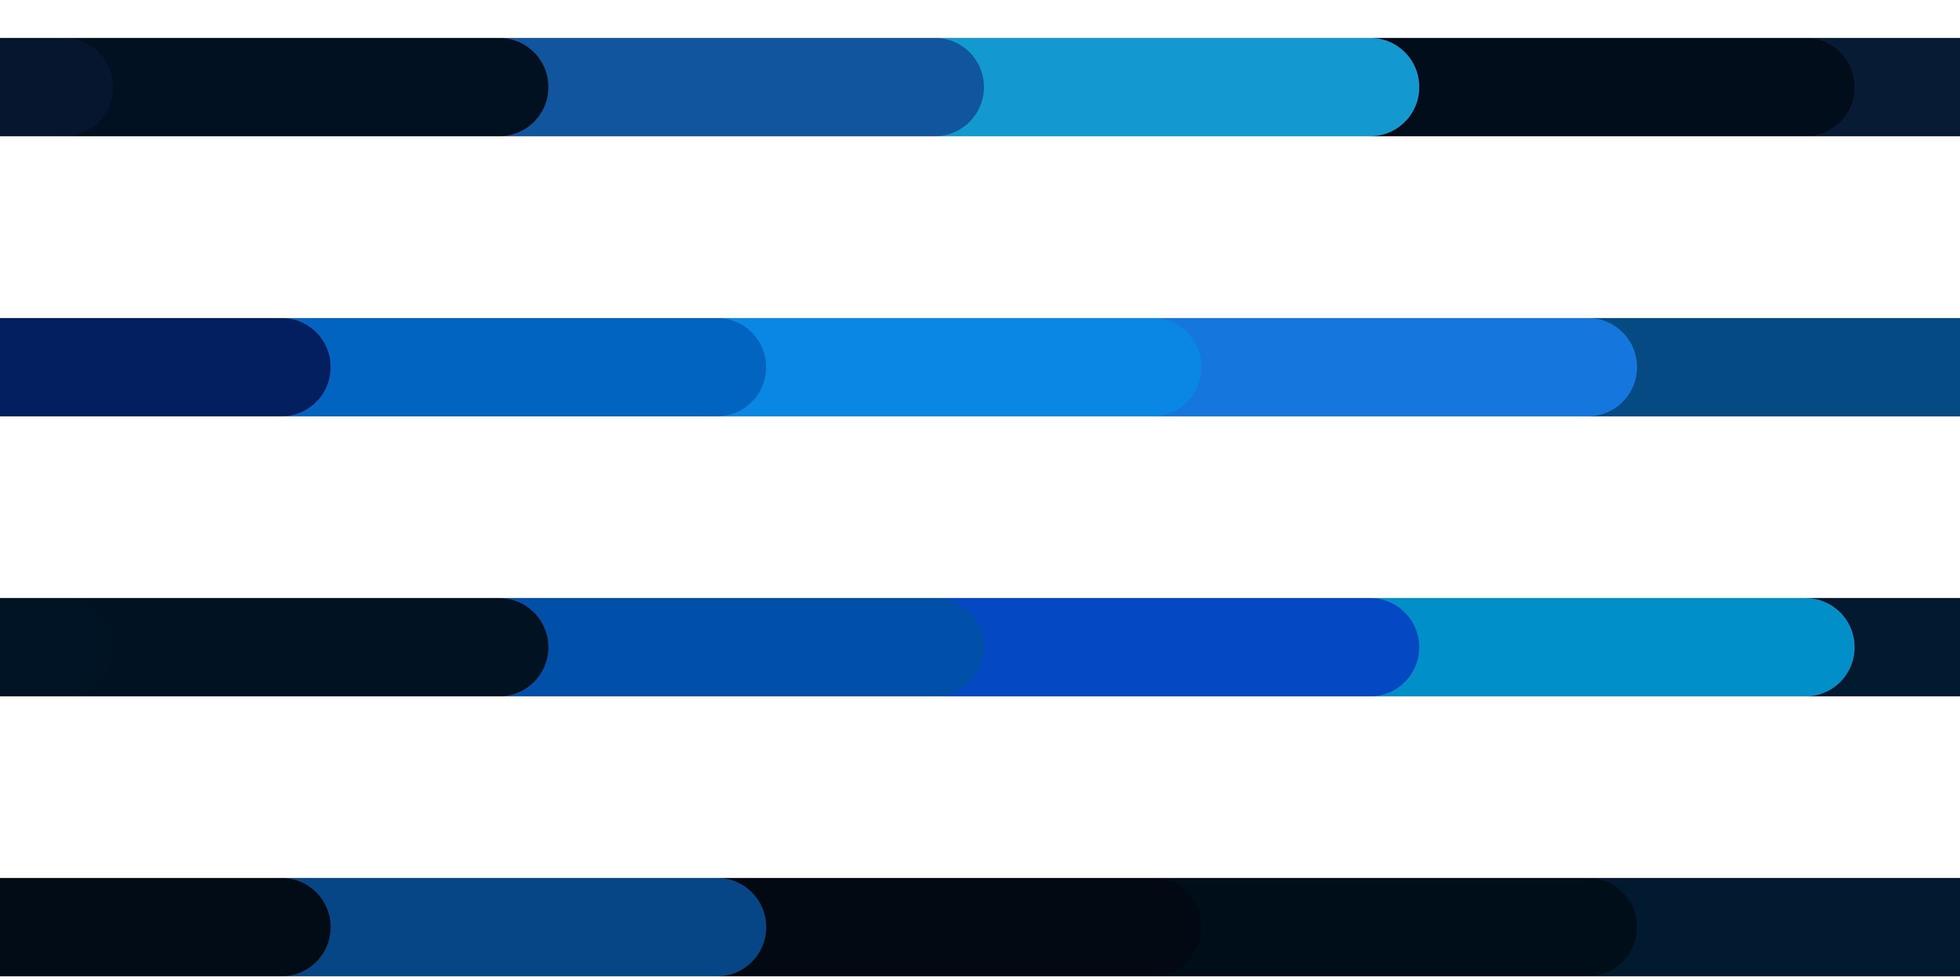 trama vettoriale blu scuro con linee illustrazione sfumata con linee rette in modello di stile astratto per il tuo design dell'interfaccia utente